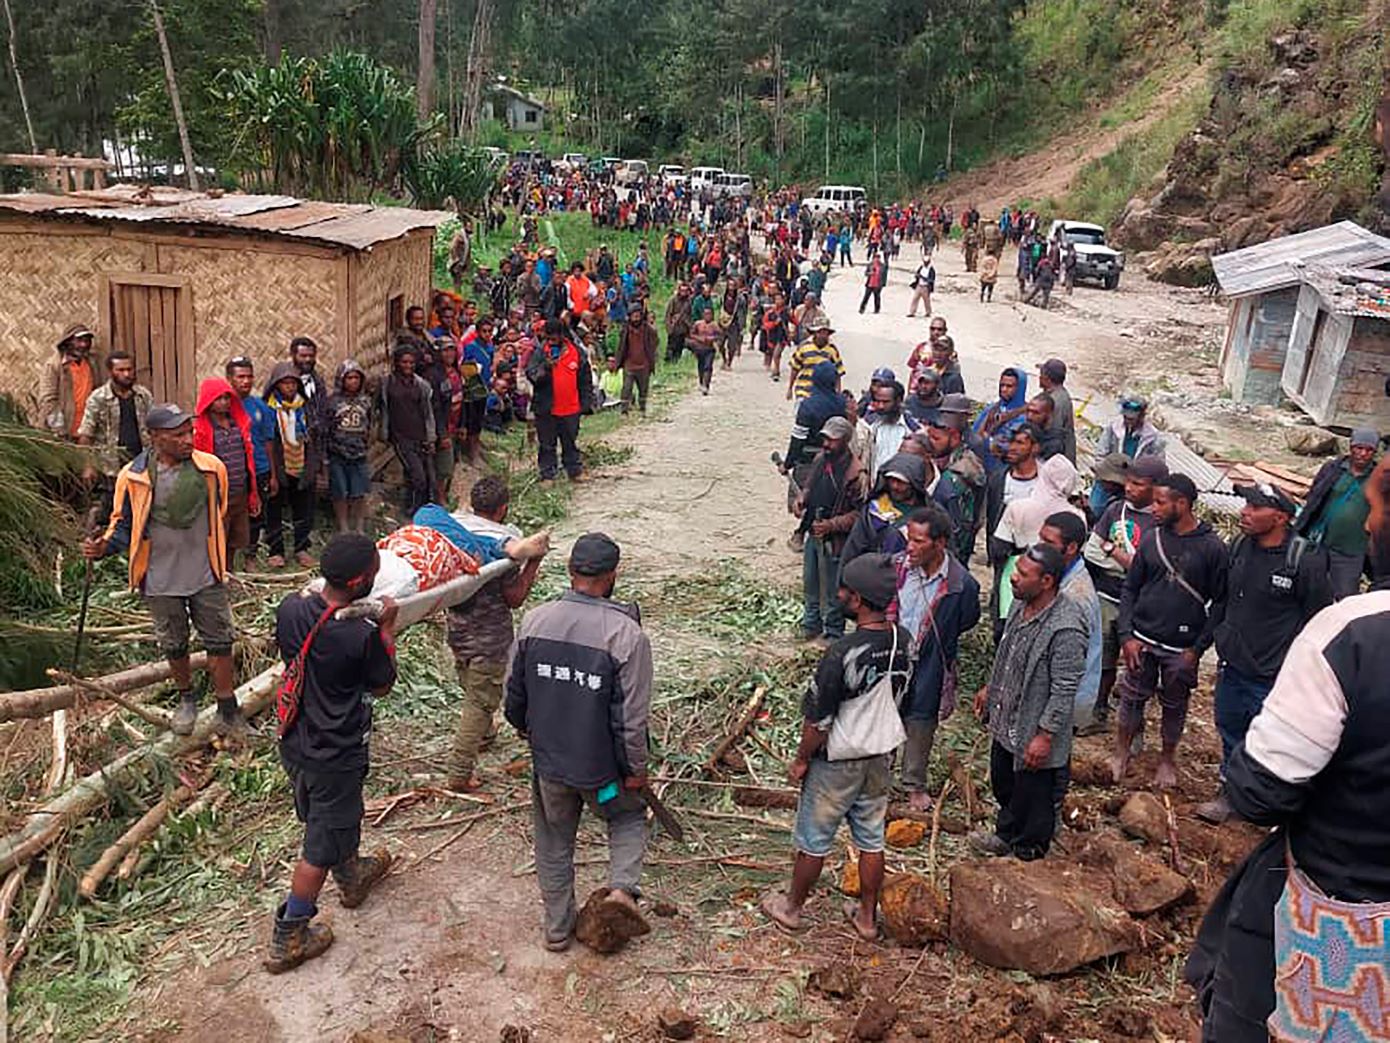 Κατολίσθηση στην Παπούα Νέα Γουινέα: Θάφτηκαν ζωντανοί «πάνω από 2.000 άνθρωποι»